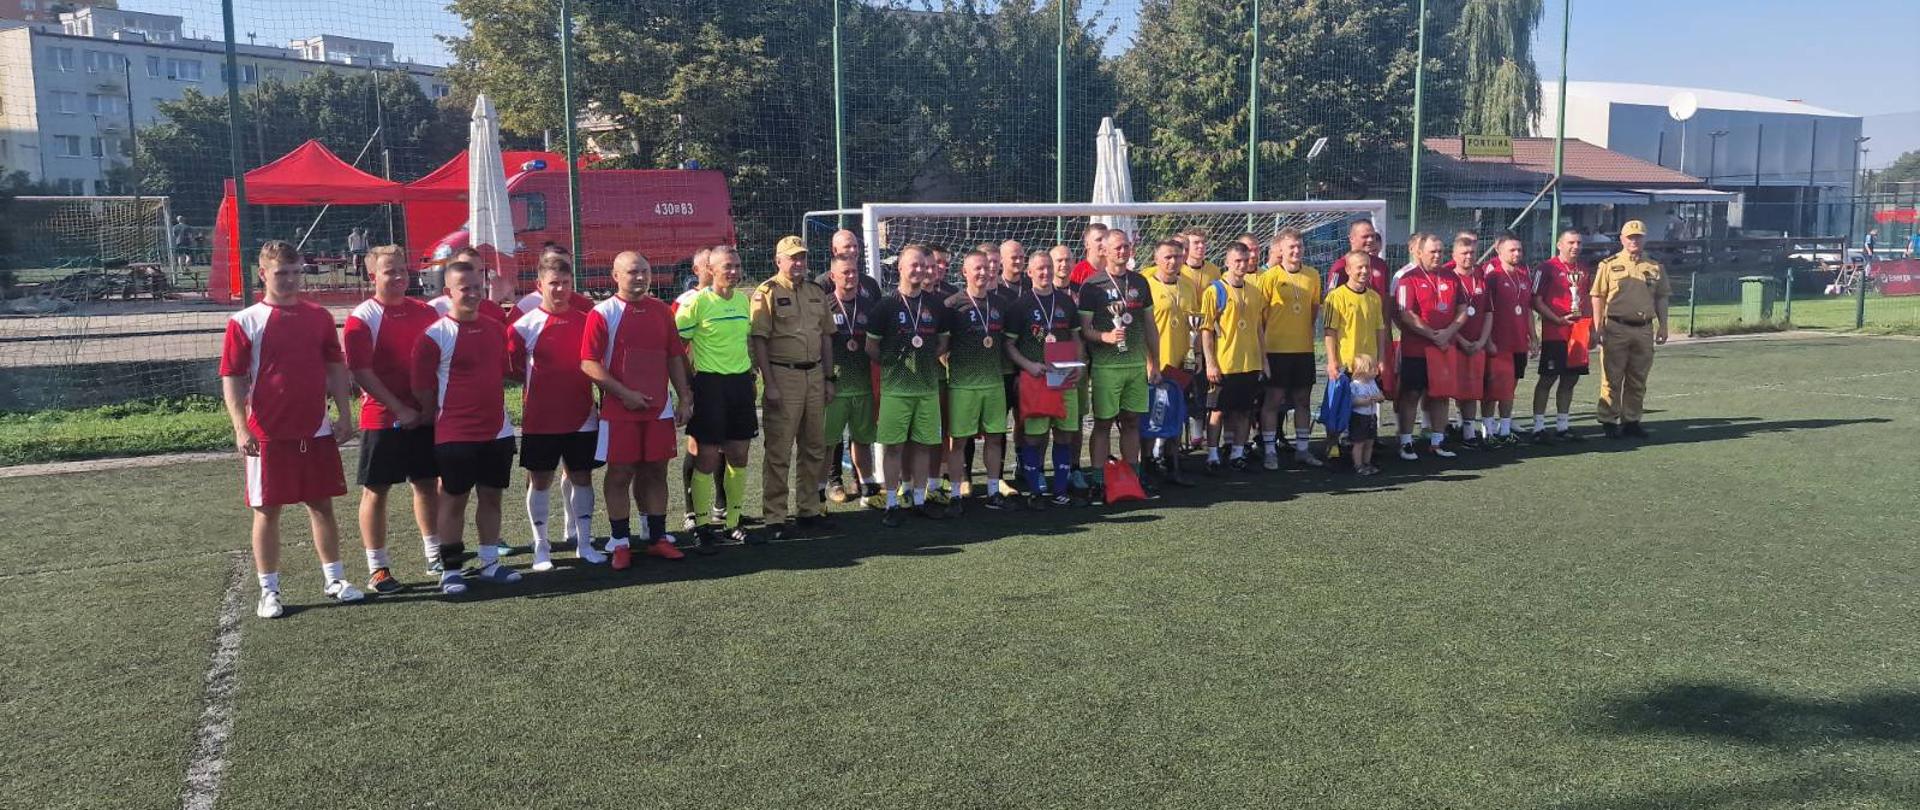 Na boisku piłkarskim, przed bramką, stoją 4 drużyny piłkarskie wraz z Komendantem Wojewódzkim PSP i jego Zastępcą, a także sędziowie w zielonych koszulkach.